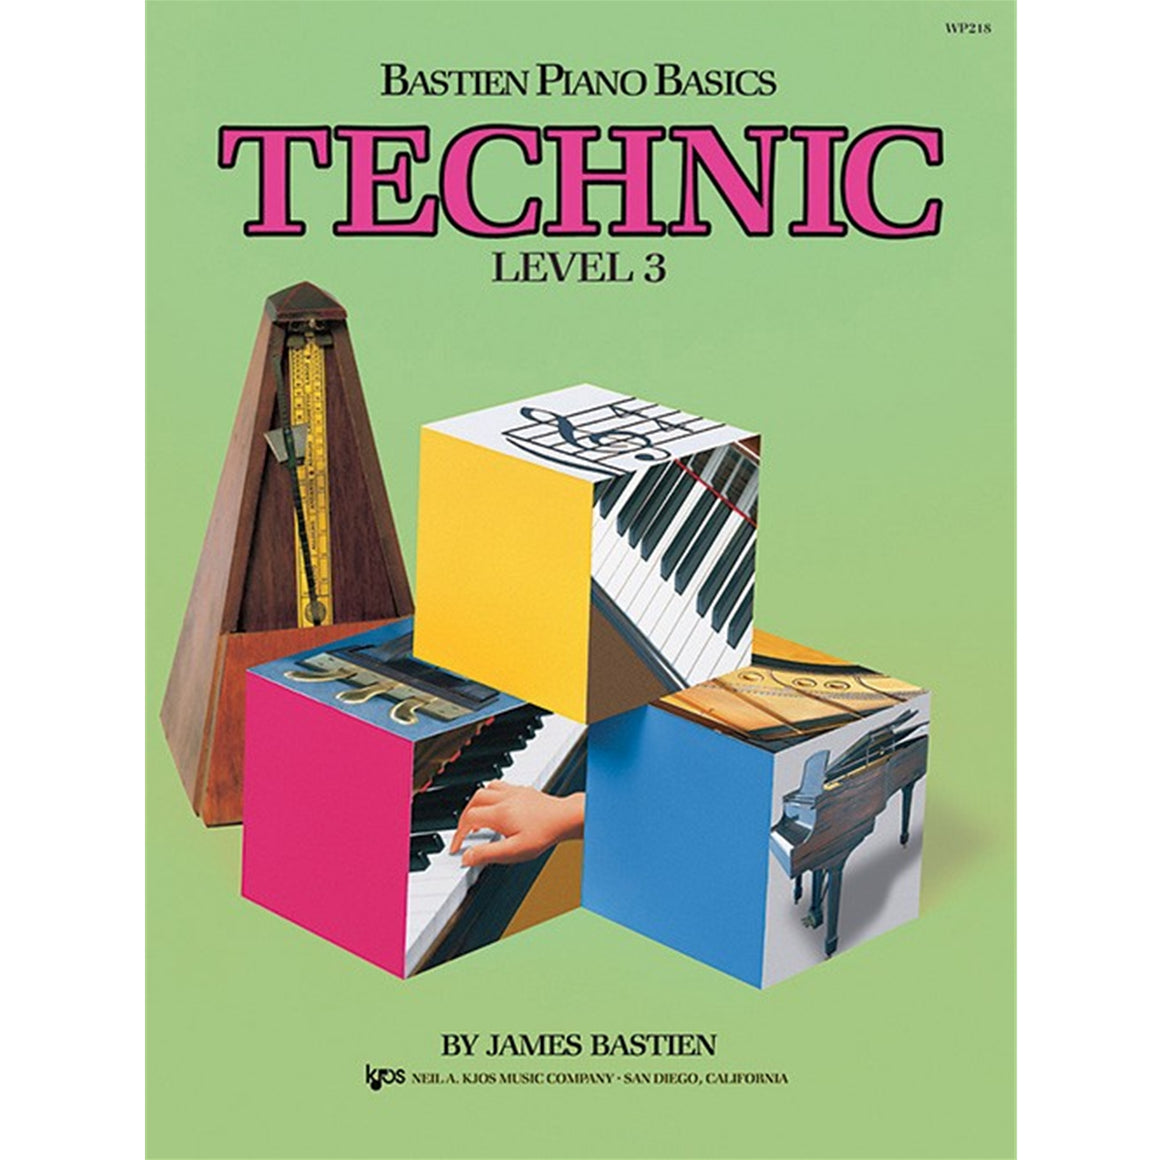 KJOS WP218 Bastien Piano Basics Technic Level 3